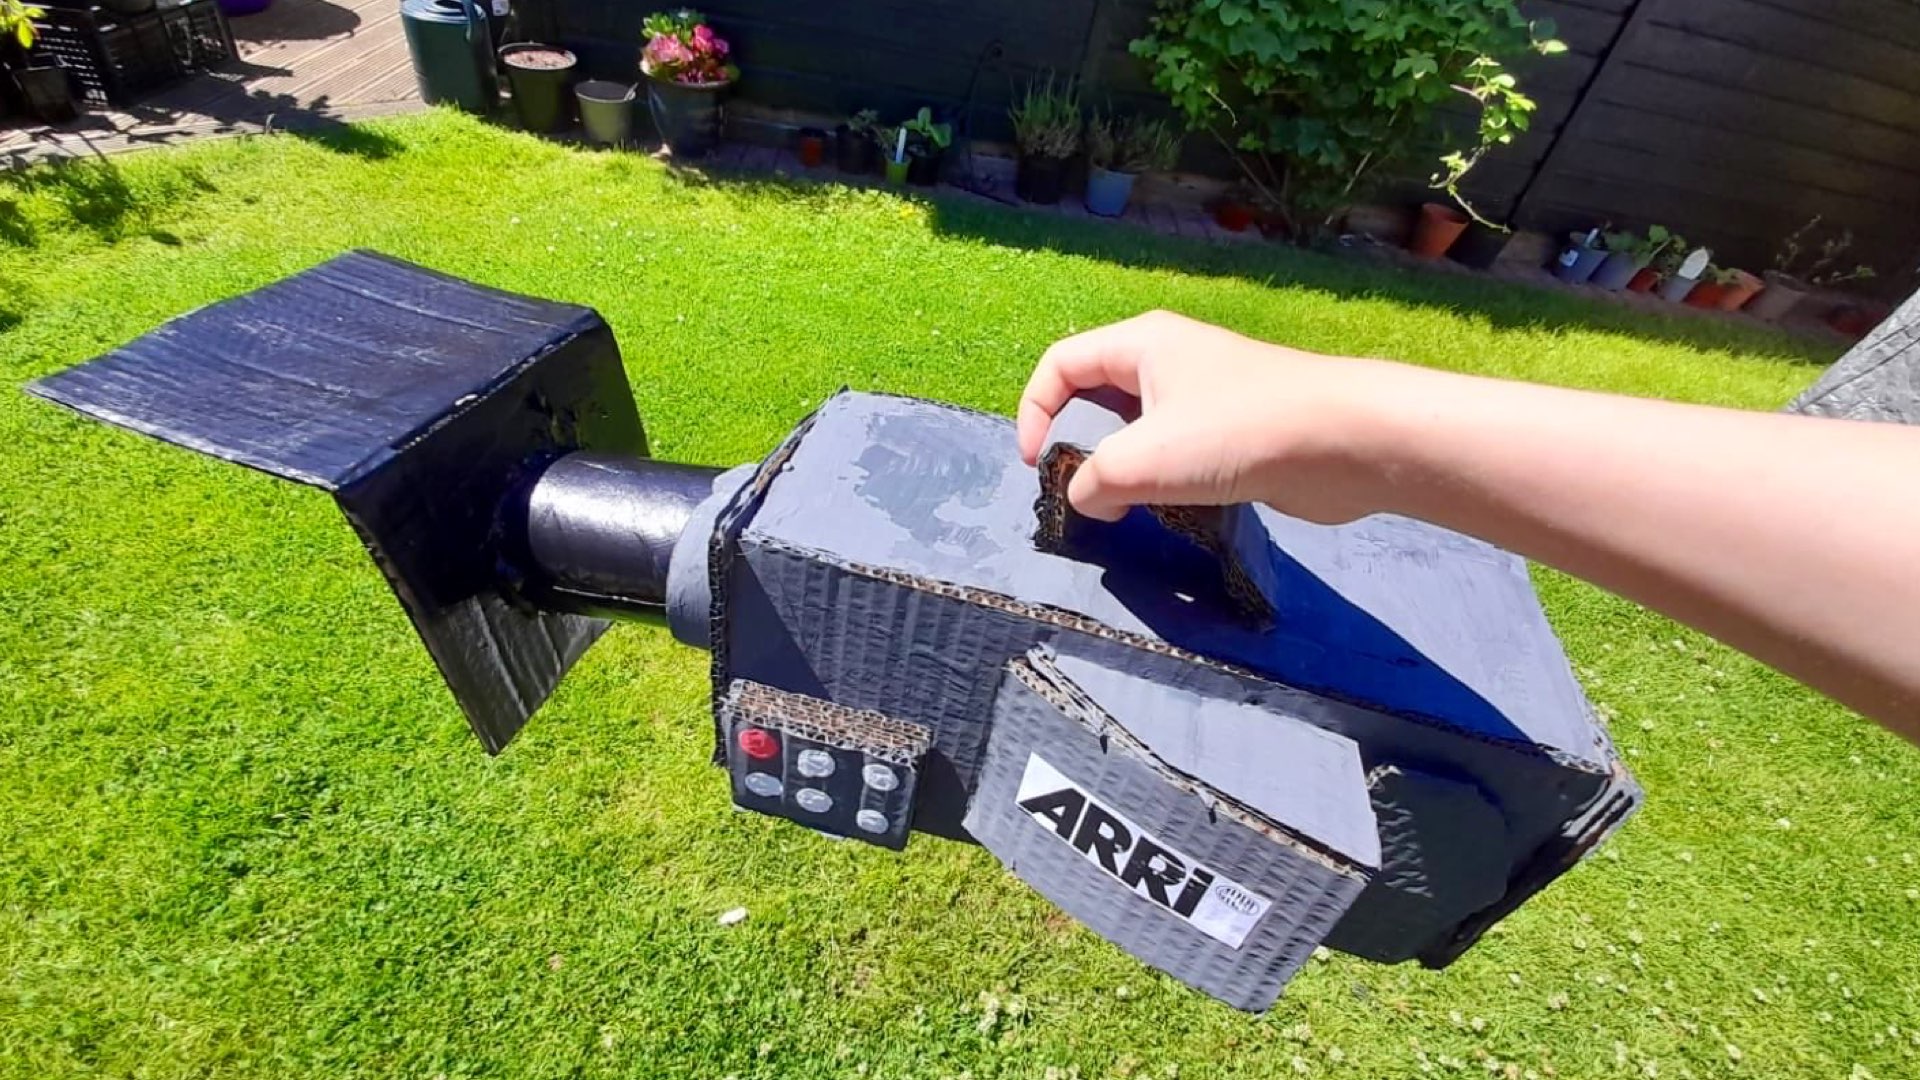 ARRI ALEXA Made of Cardboard: Built by an 11-Year-Old Filmmaker